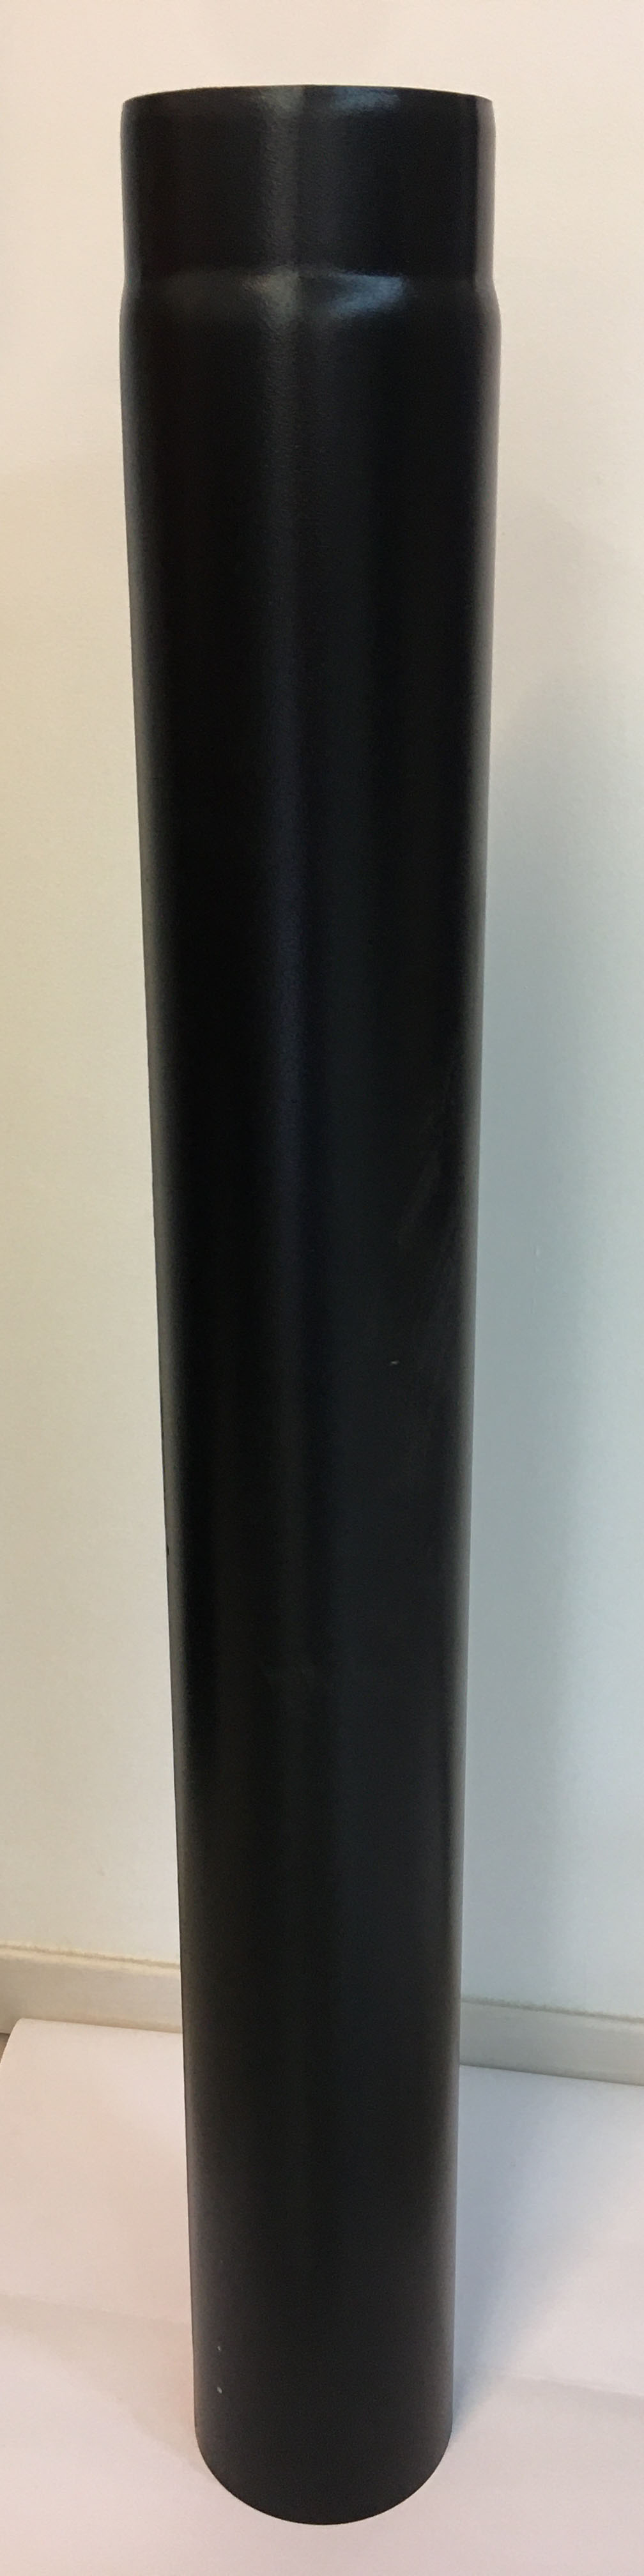 Vastagfalú füstcső, fekete. Átmérője 120 mm, hossza 1000 mm